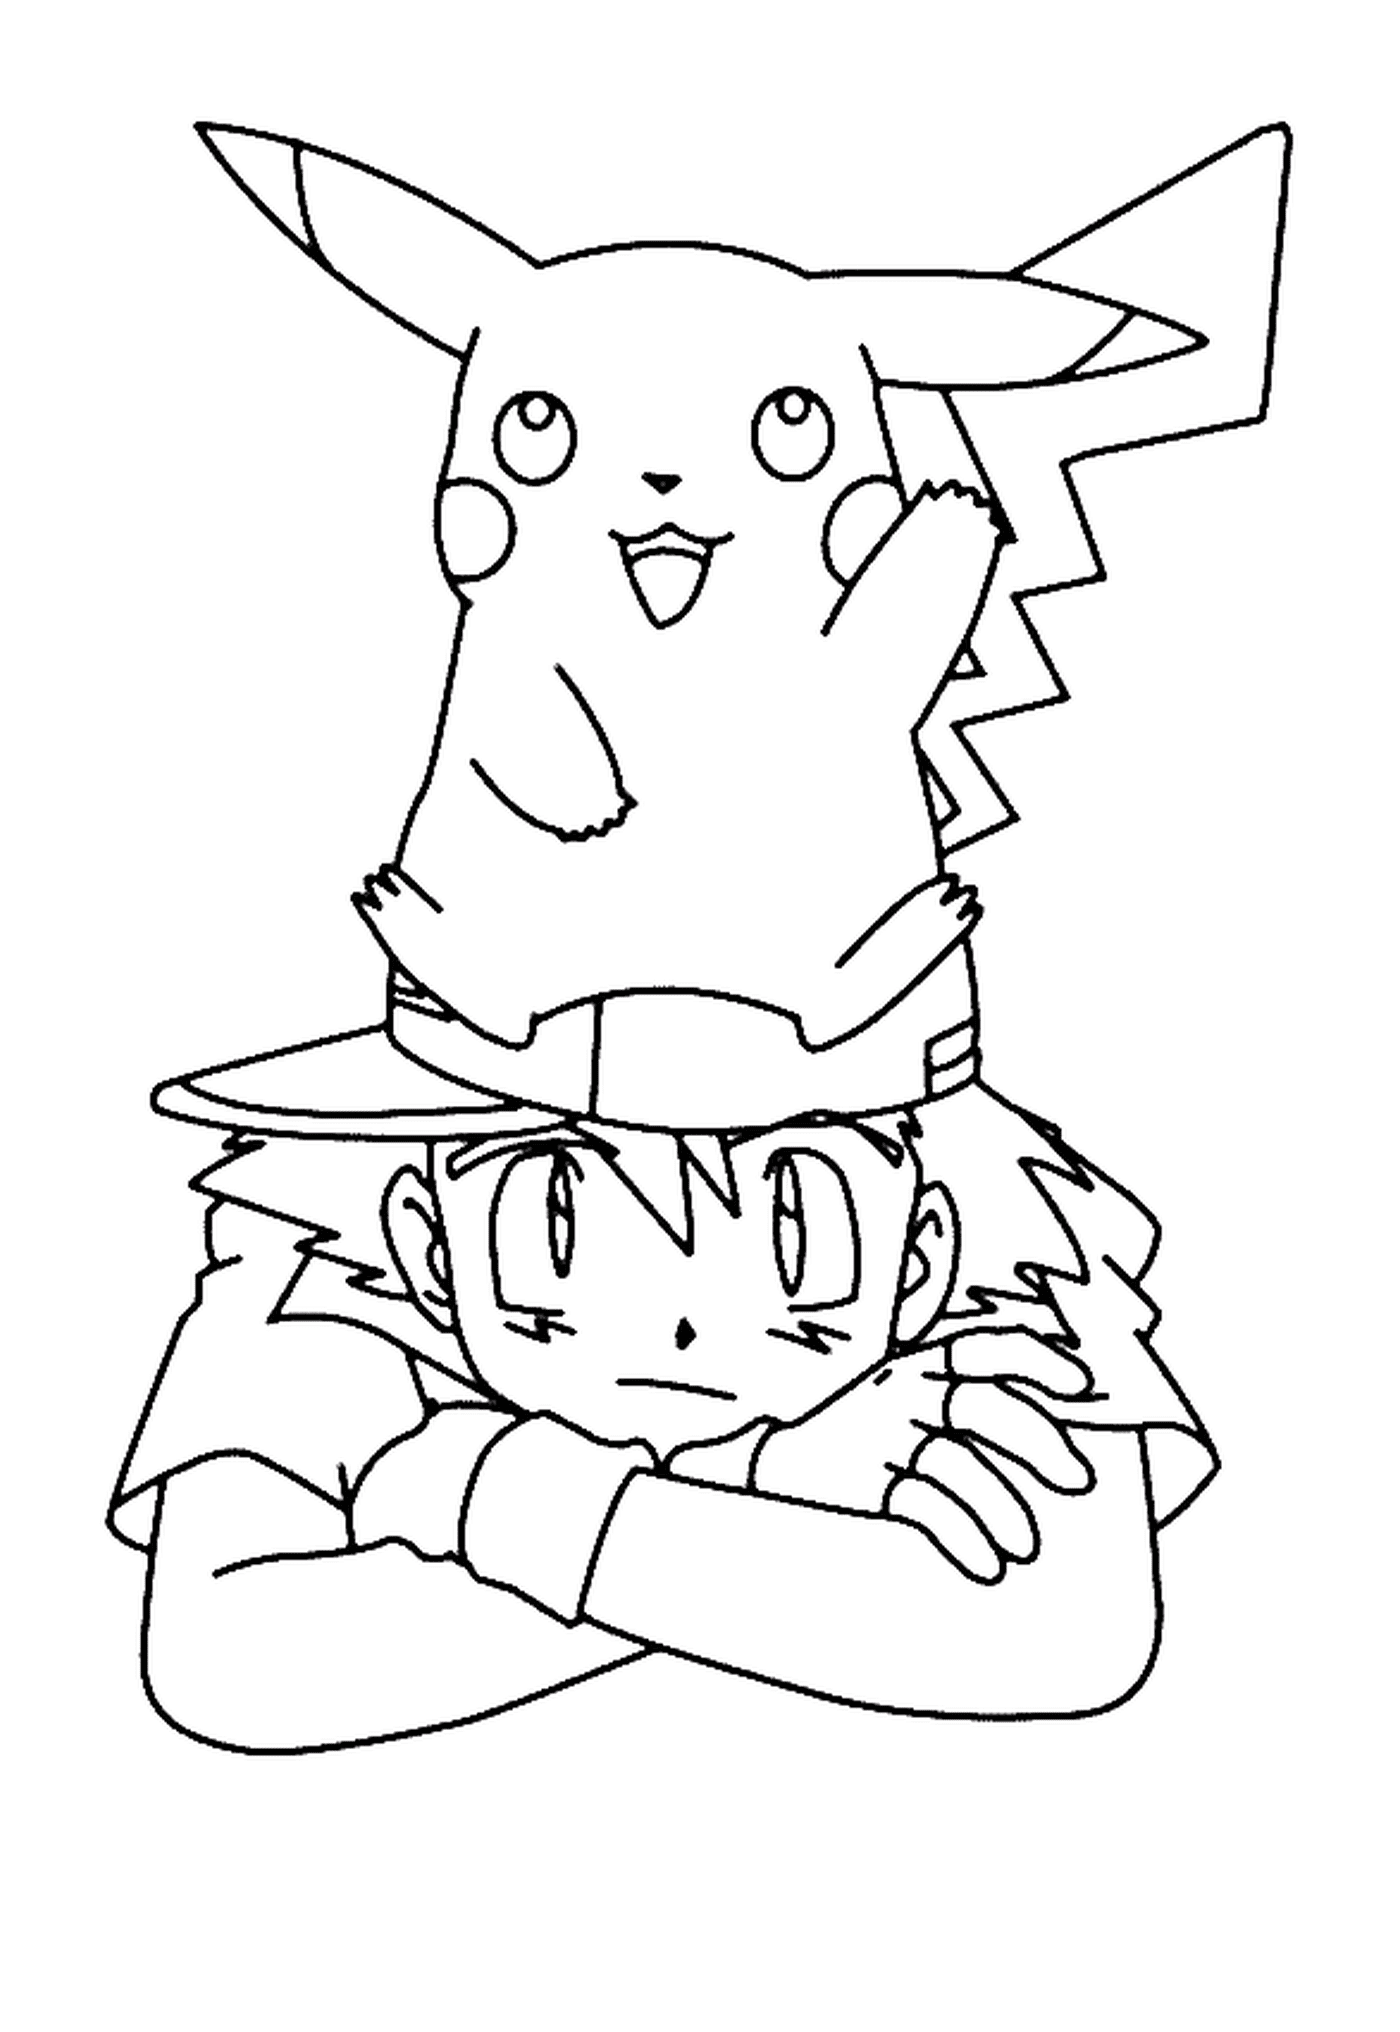  Un niño y Pikachu juntos 